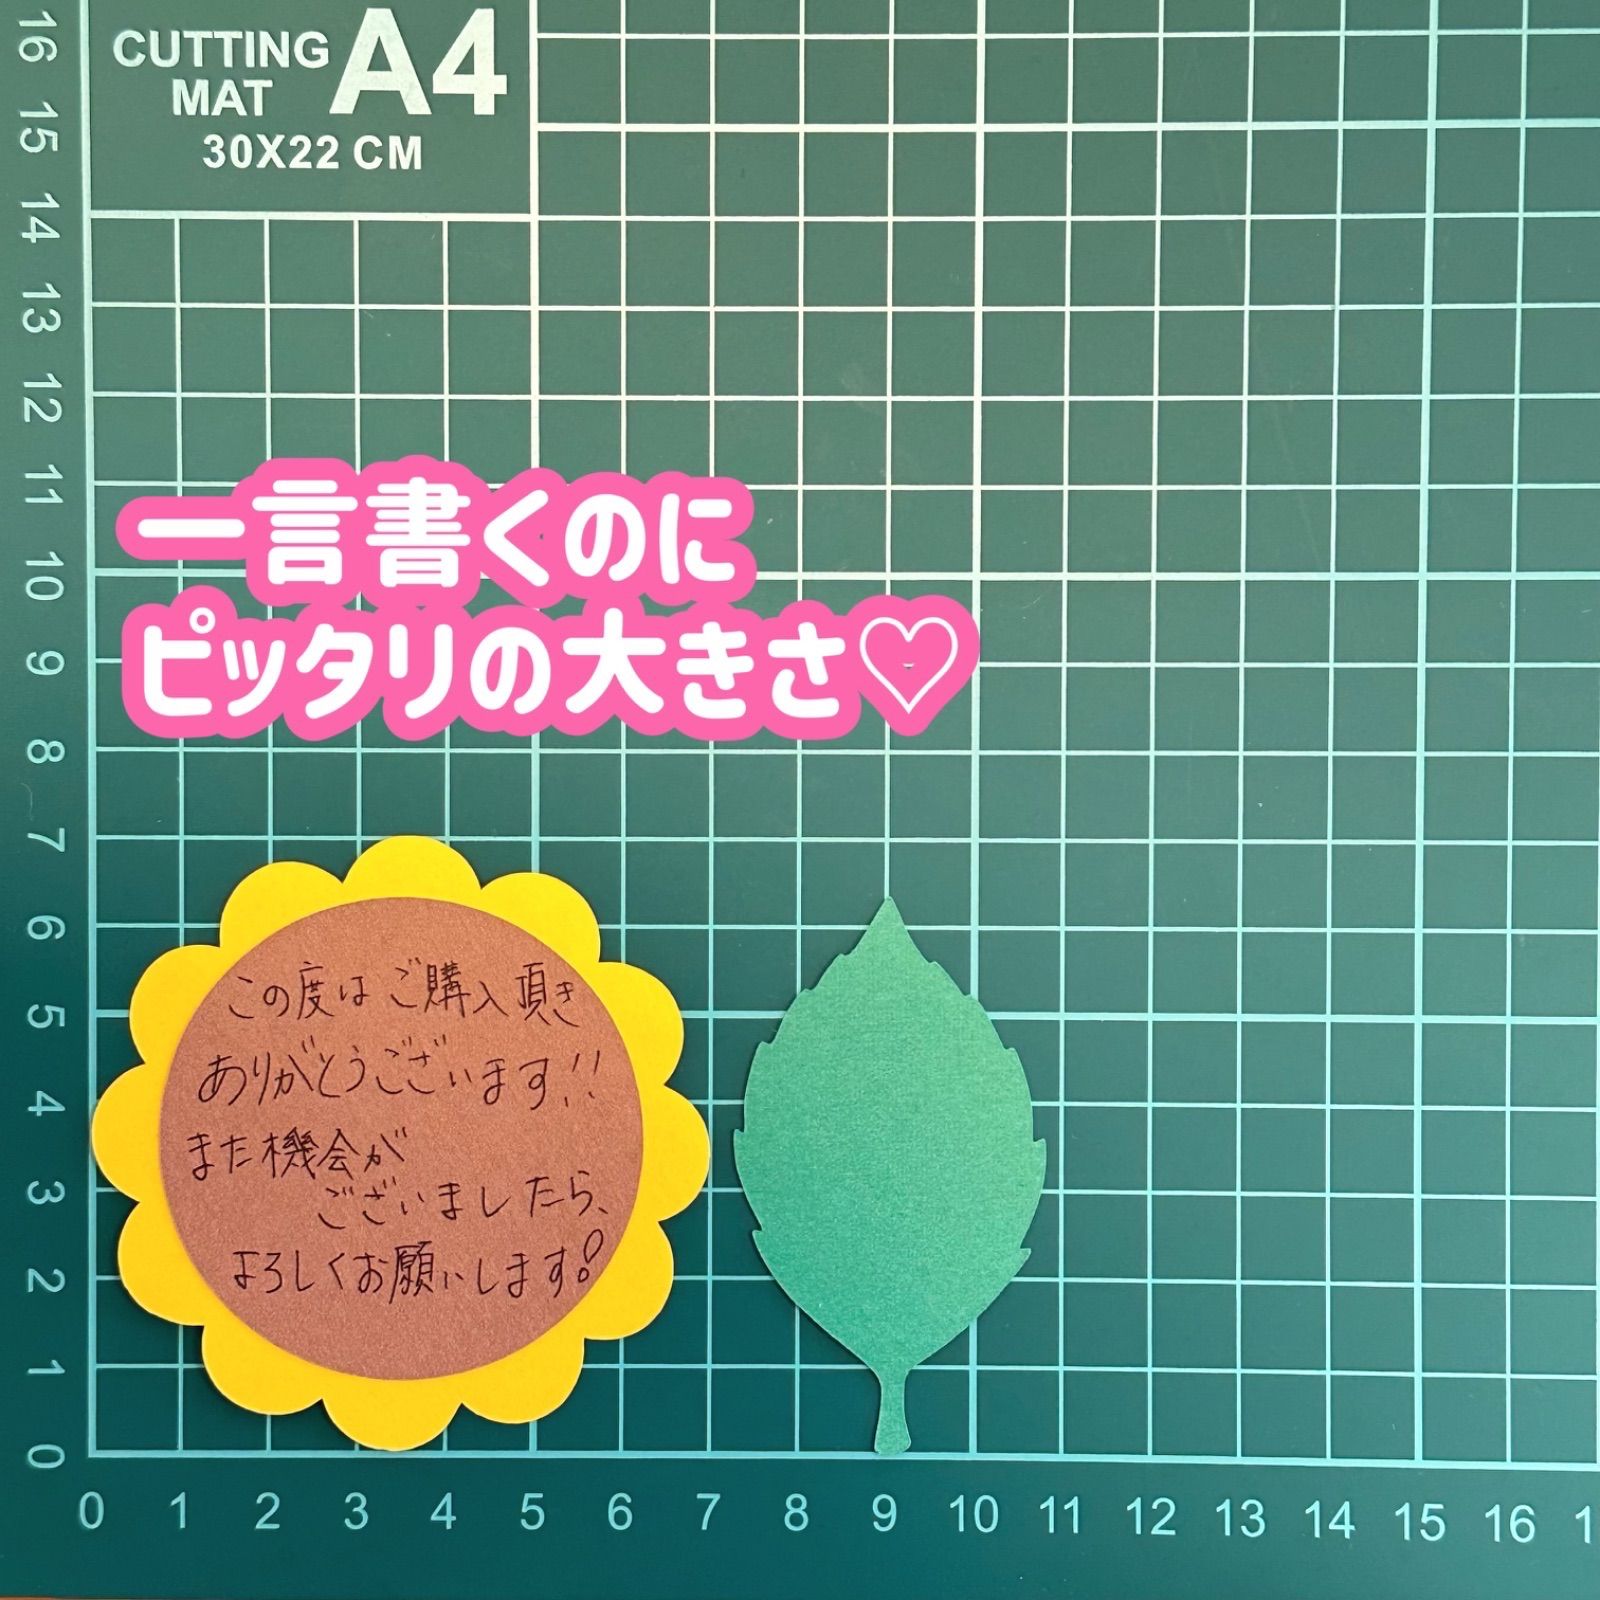 メモリアル/セレモニー用品13 コメントカード set アルバムクラフト ...